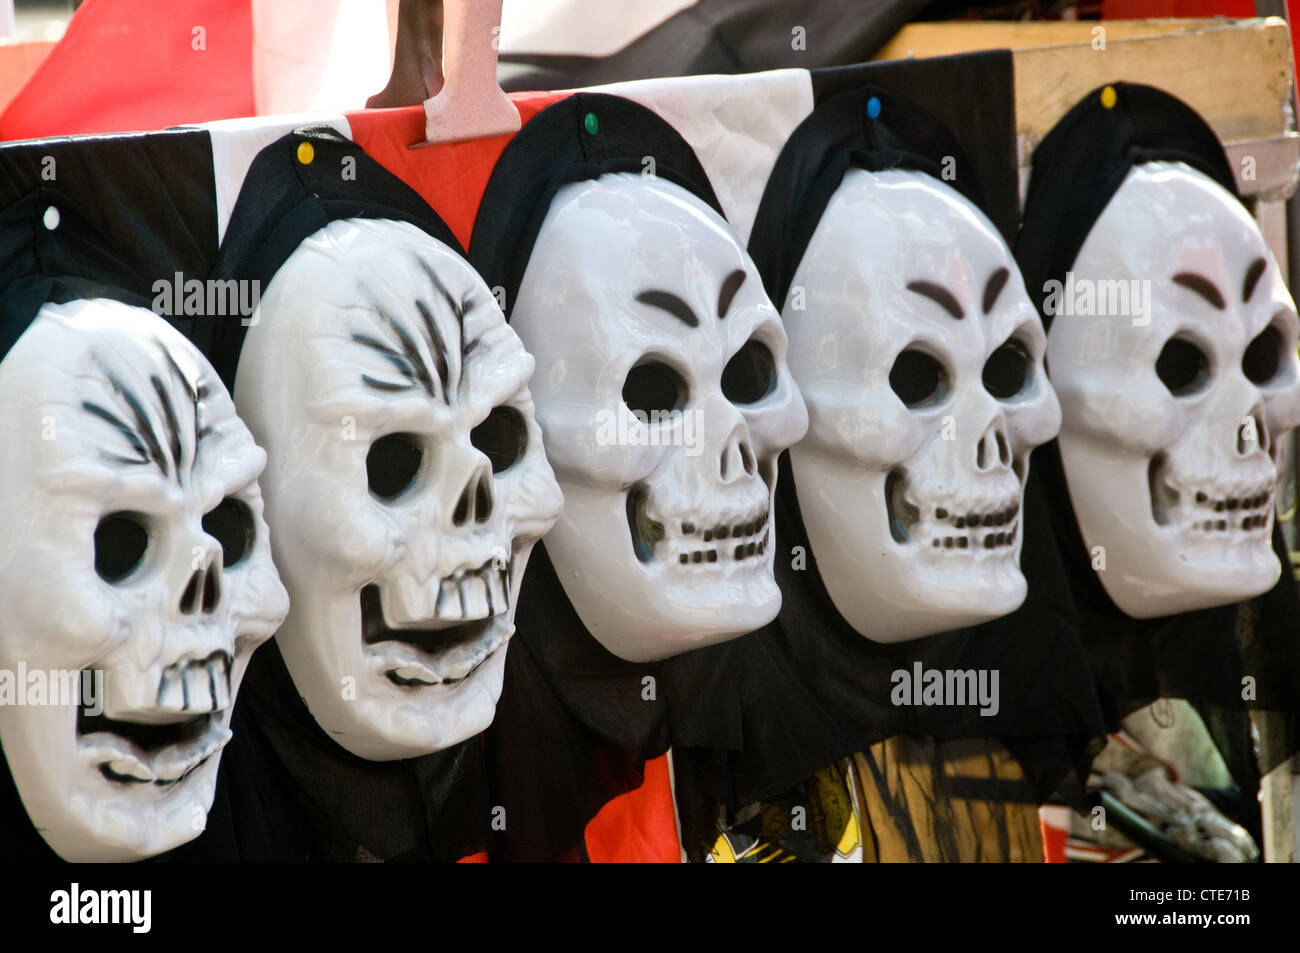 Masques anonymes vendus sur la place Tahrir, Le Caire Égypte, printemps 2012 Banque D'Images